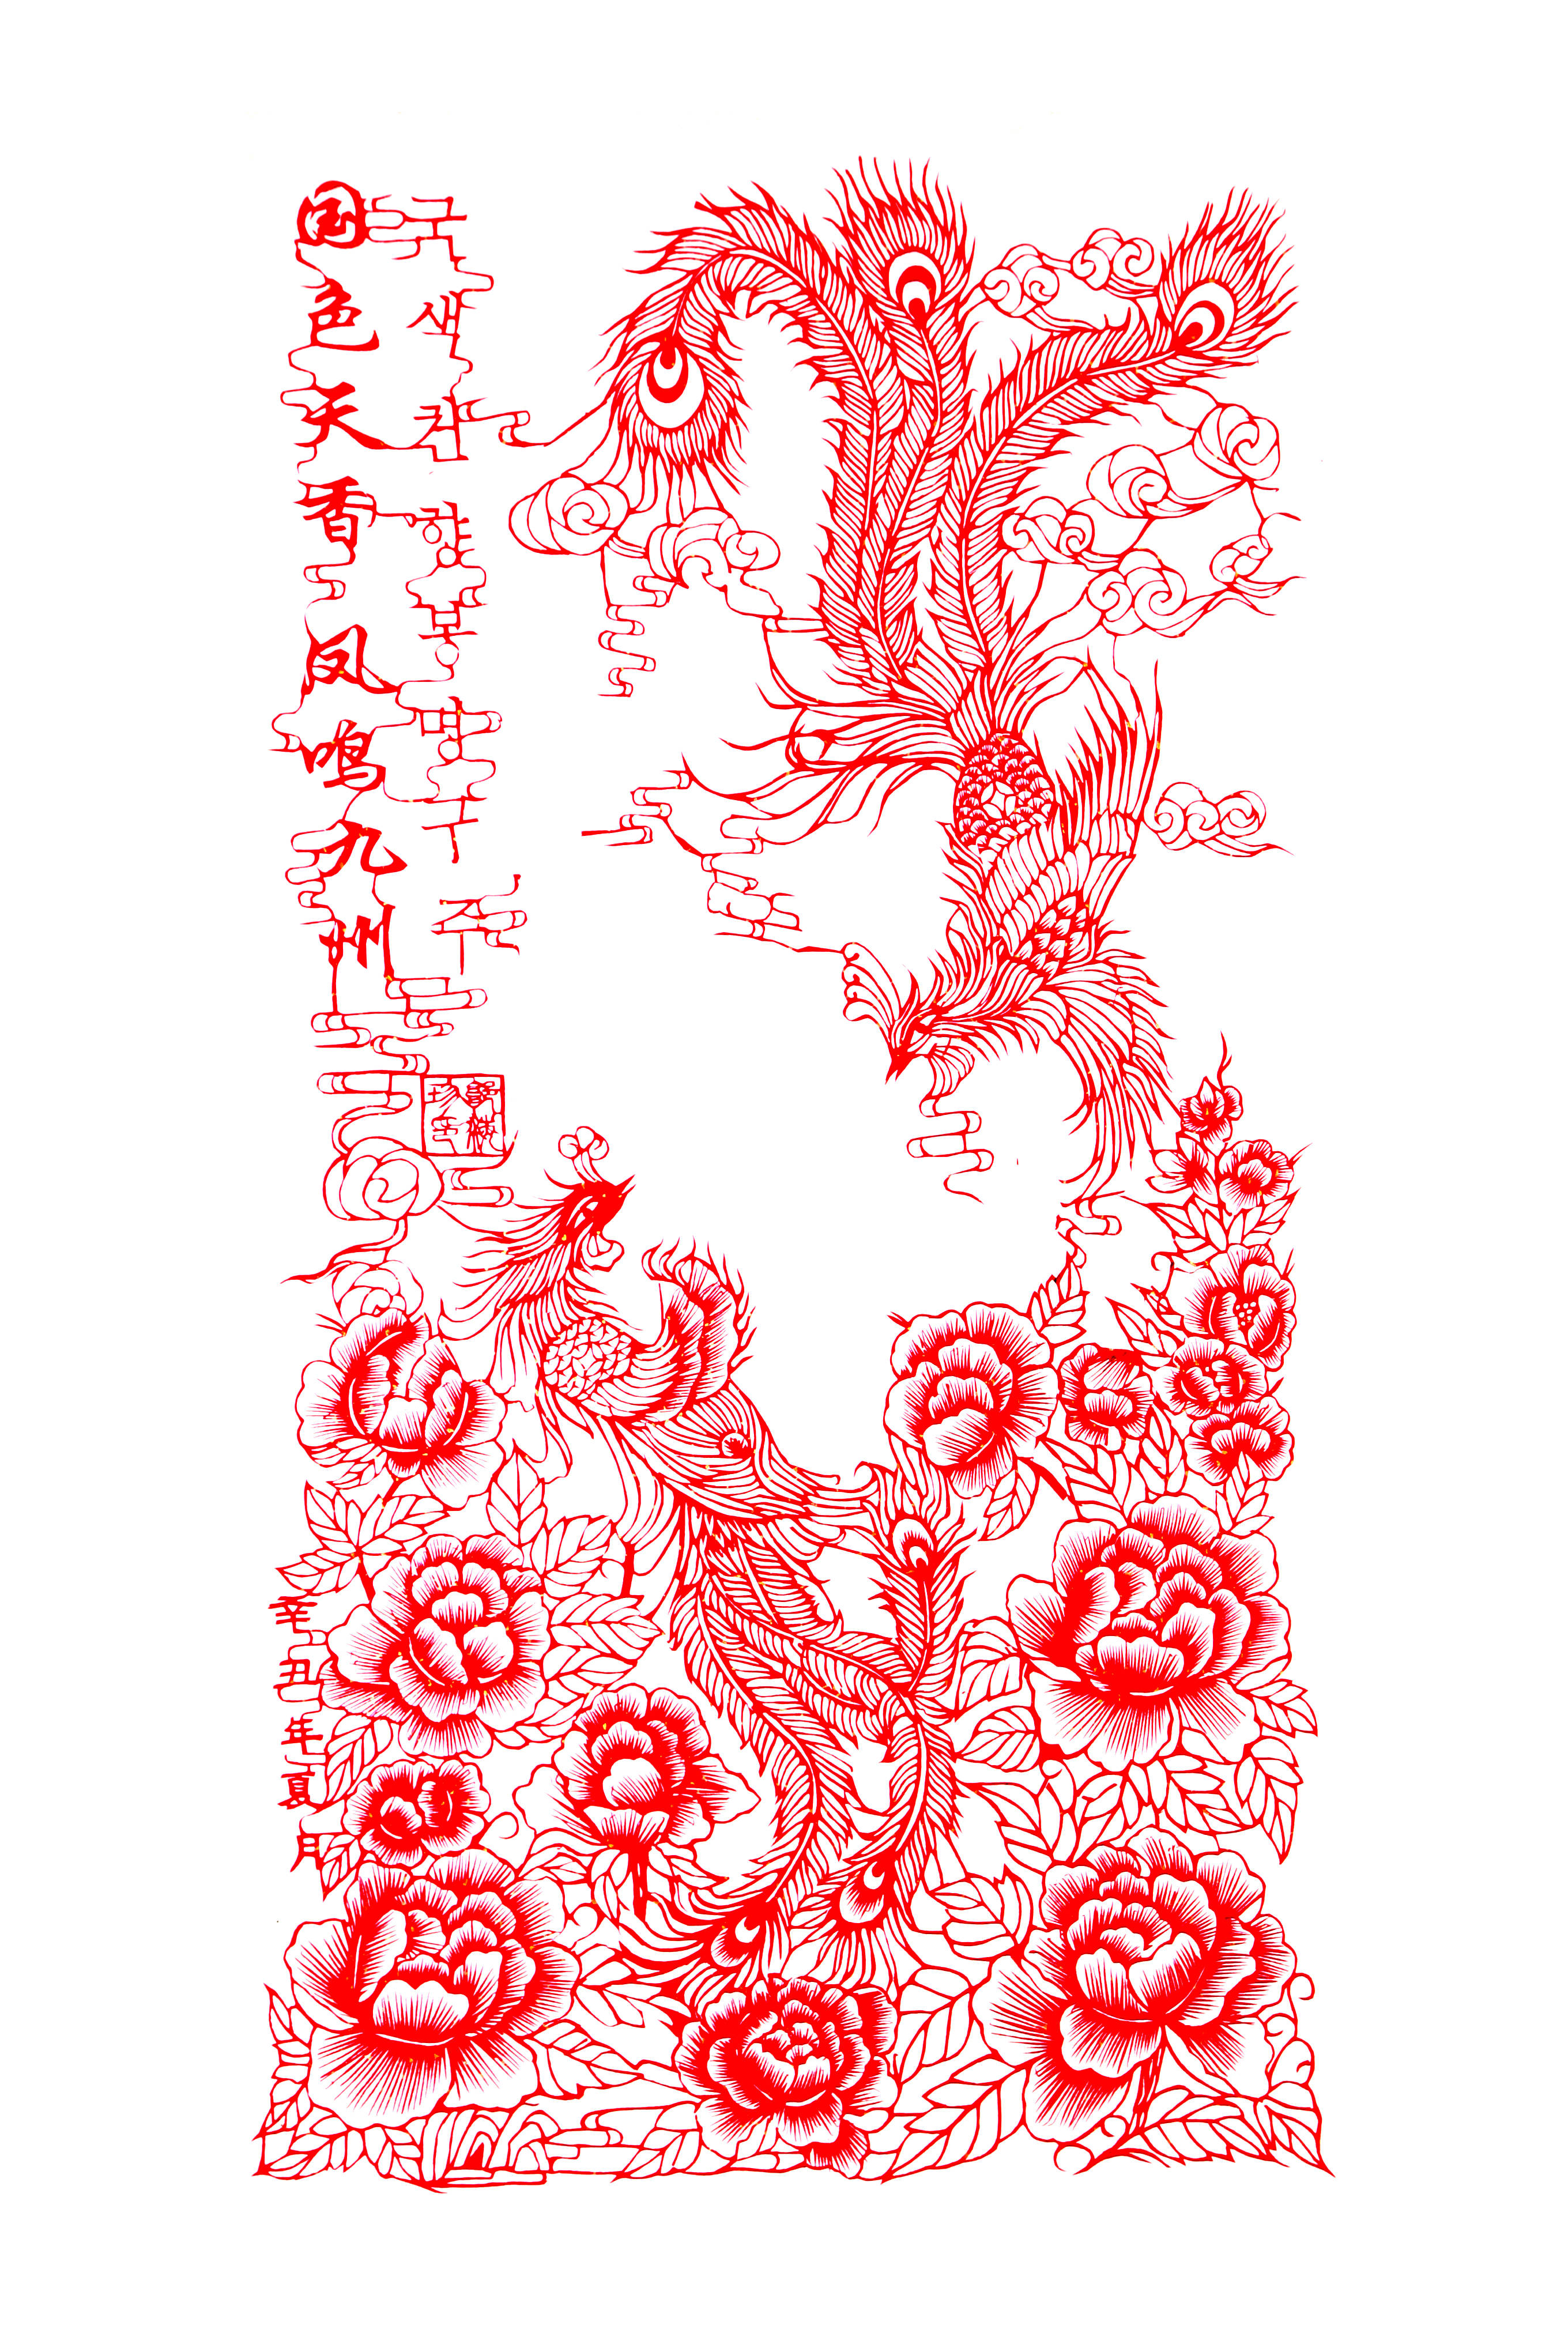 中国十大剪纸艺术家图片